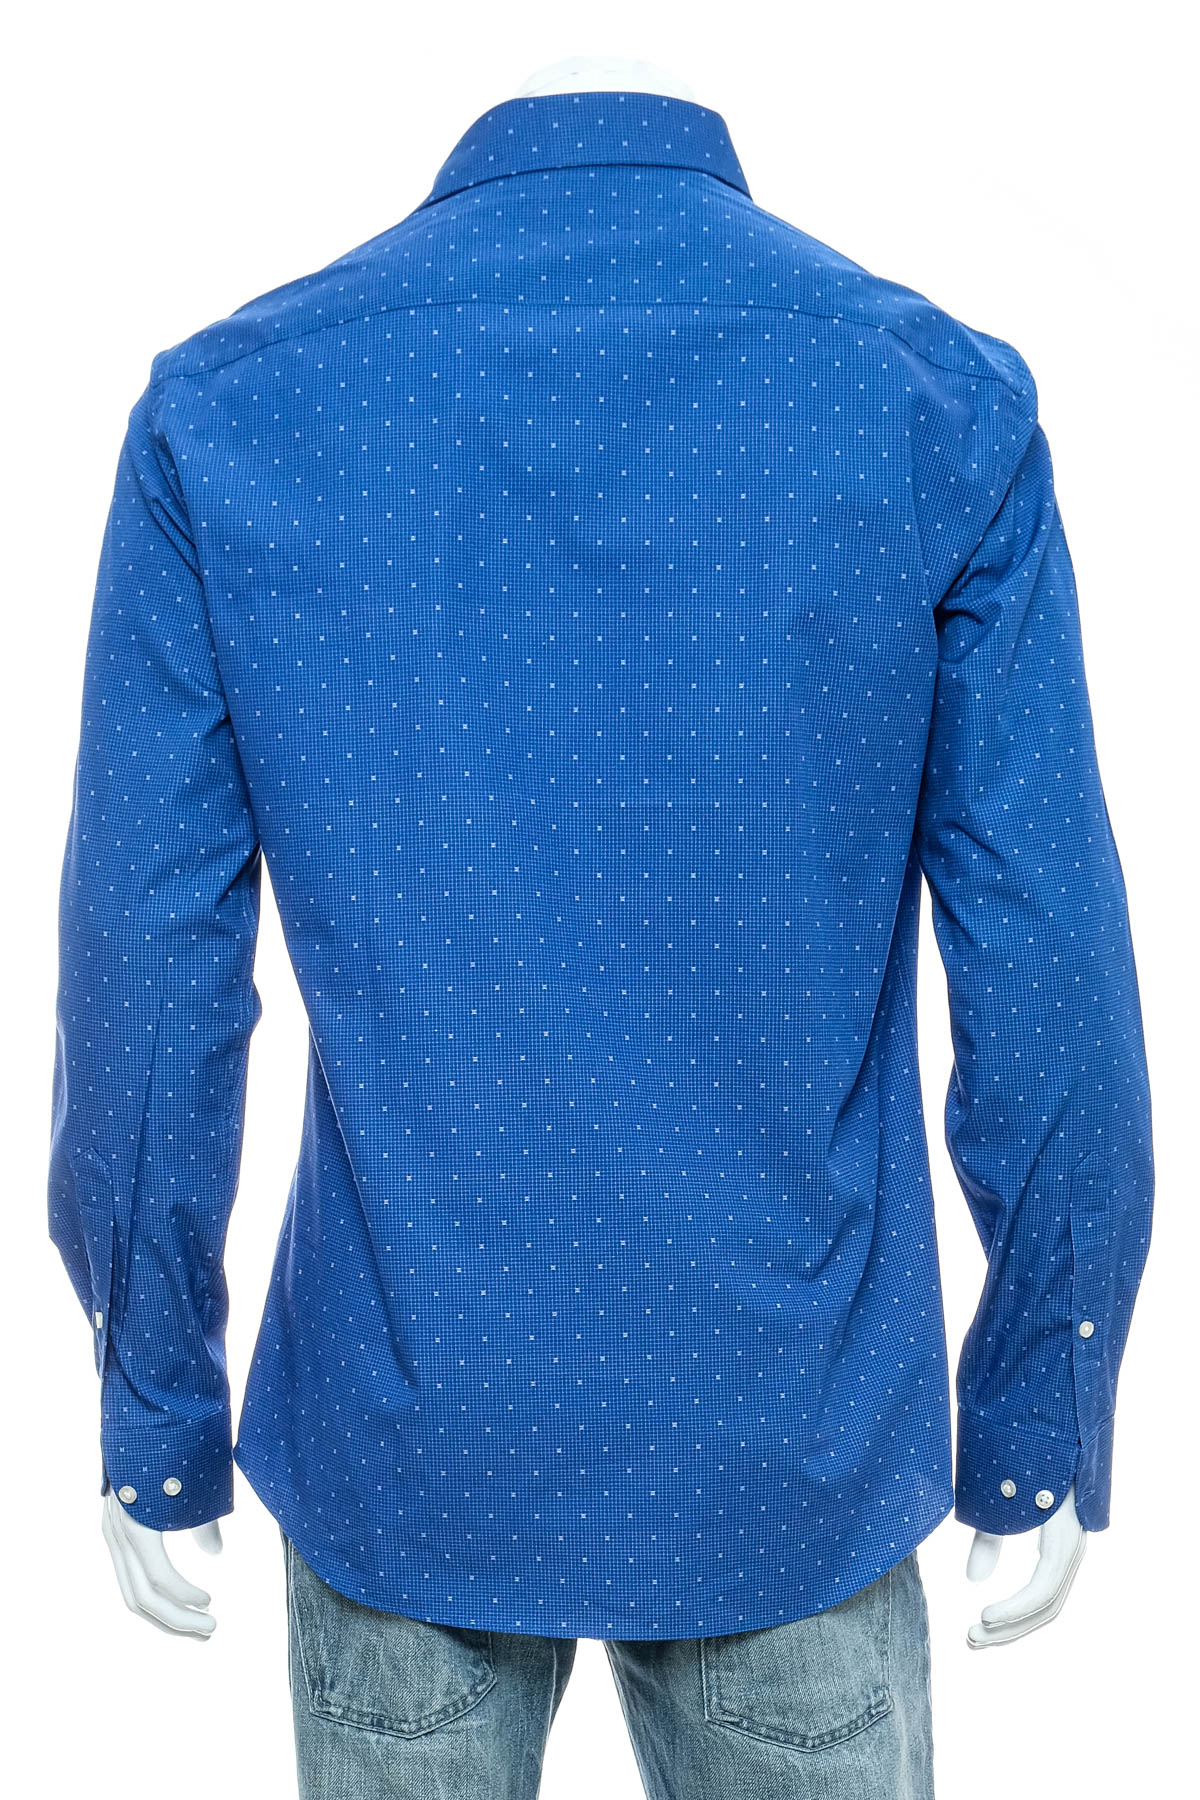 Ανδρικό πουκάμισο - The BLUEPRINT Premium - 1